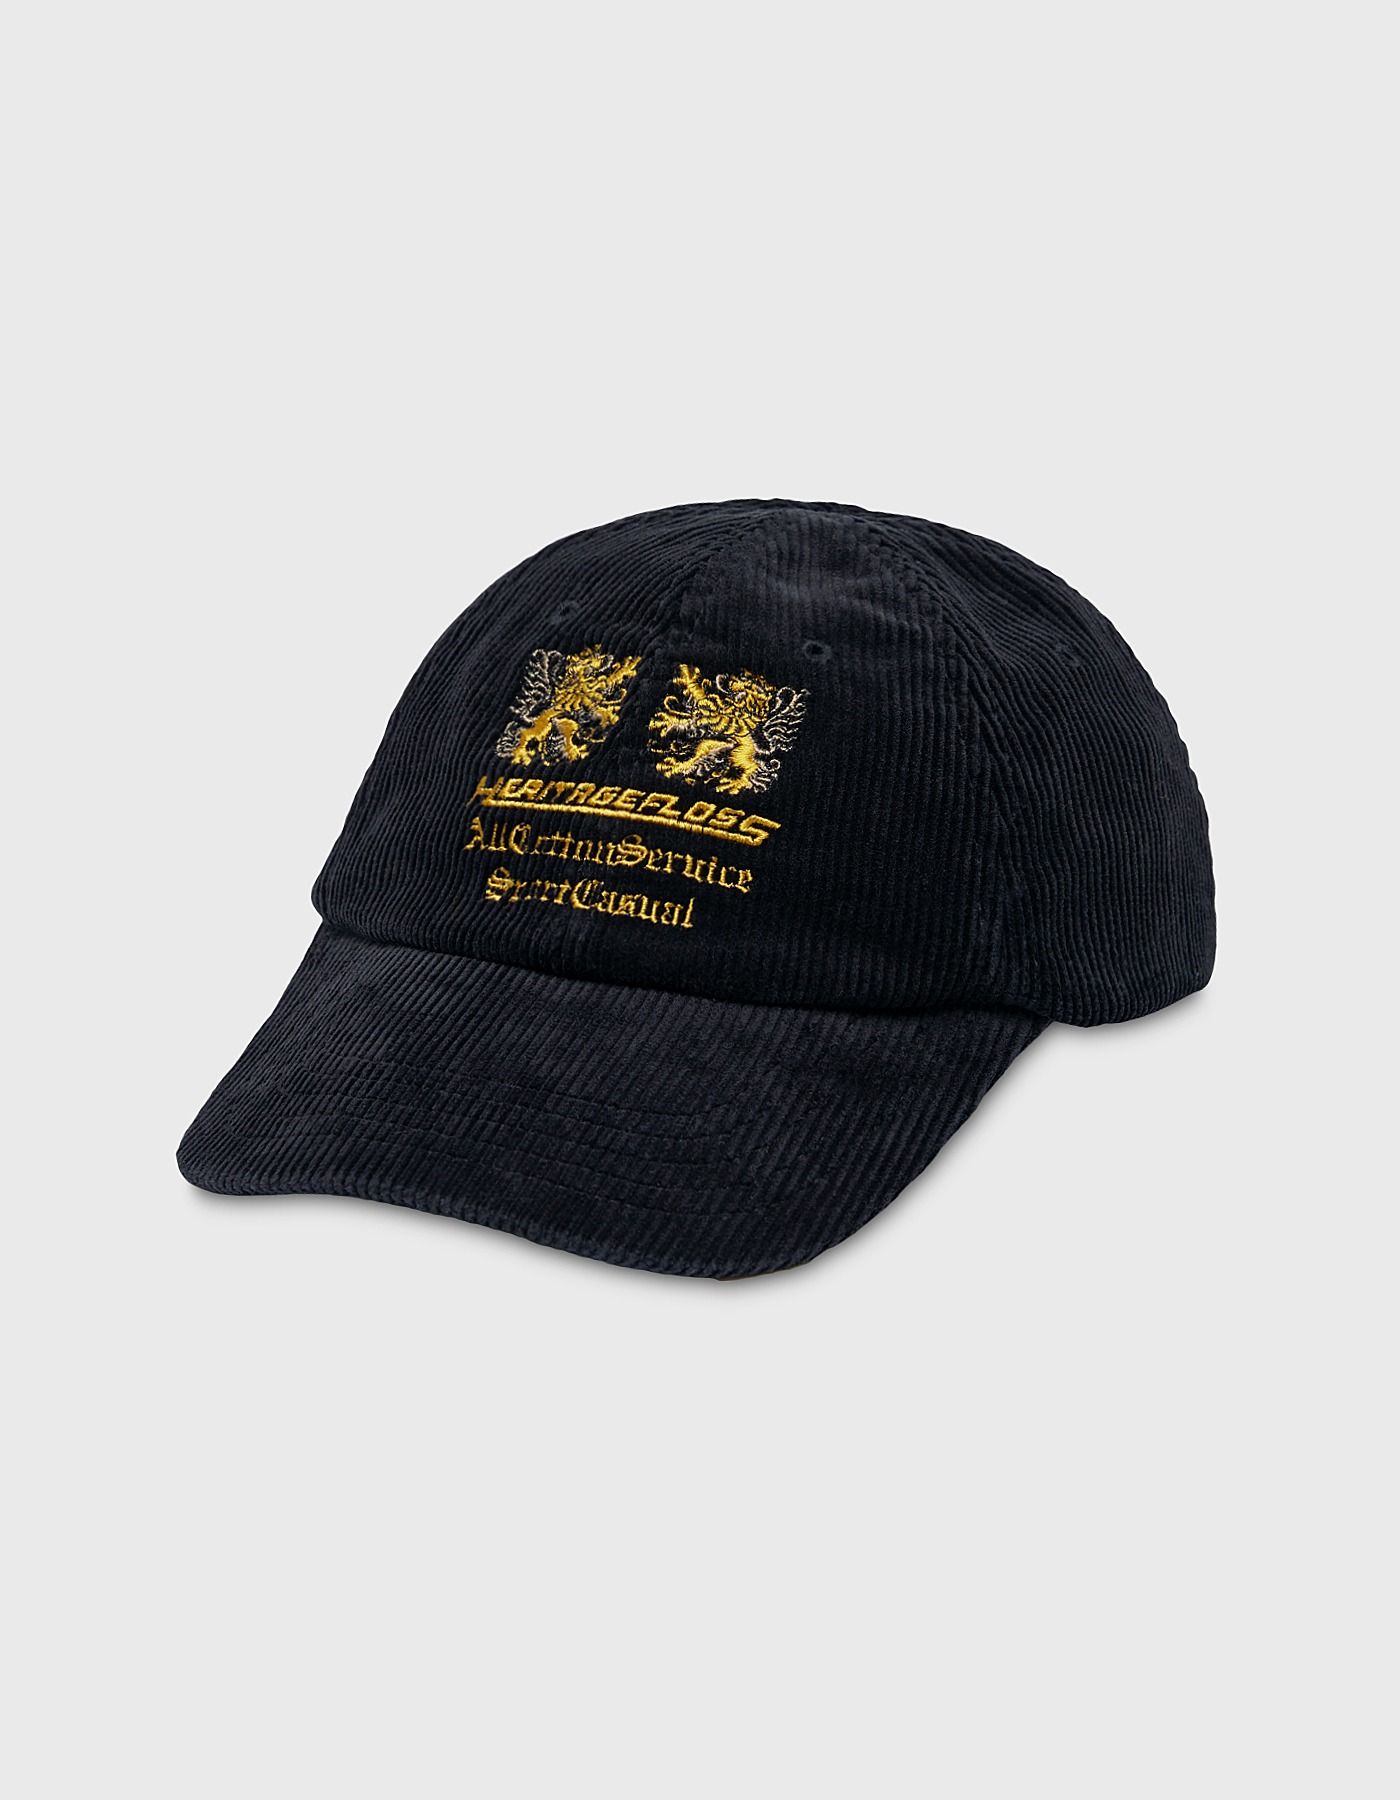 LIONS CORDUROY CAP / Black